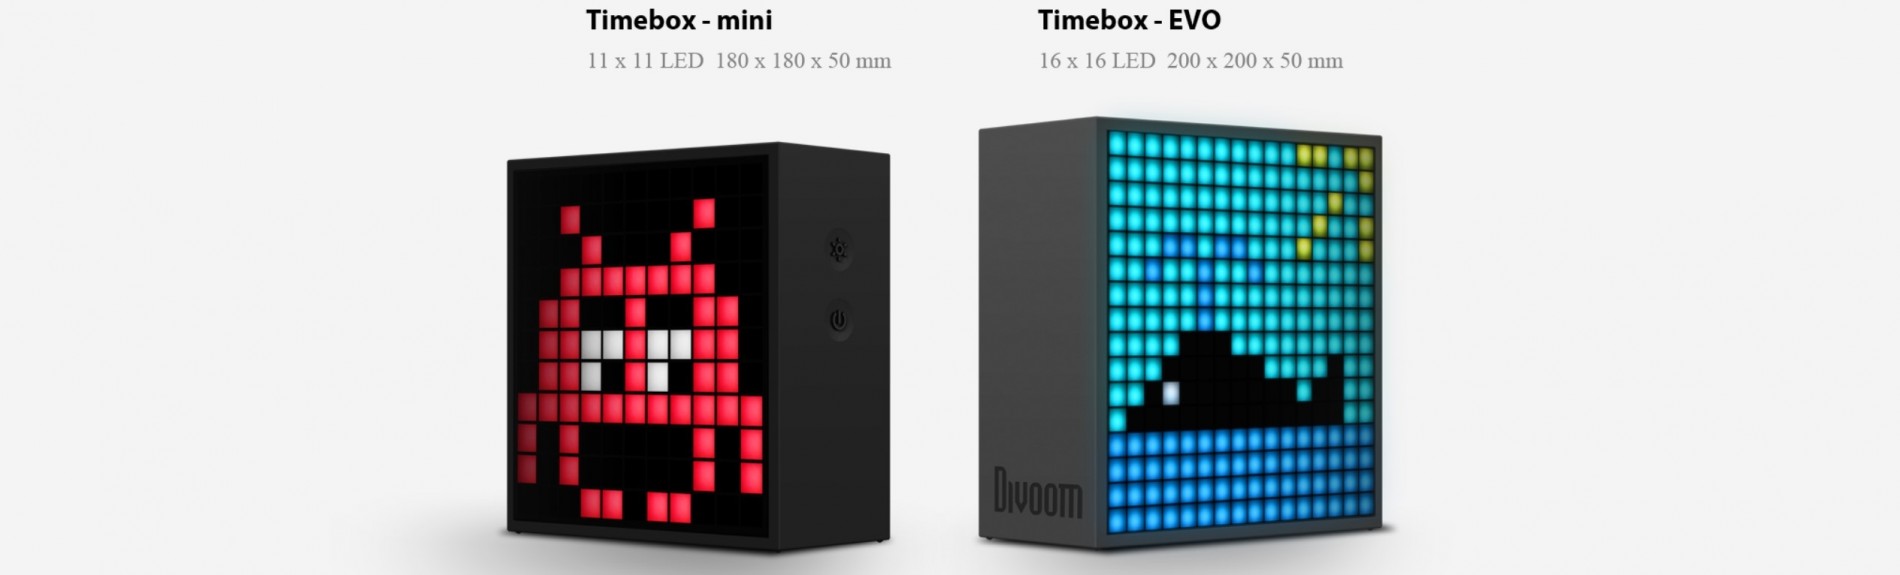 divoom_timebox_evo_3